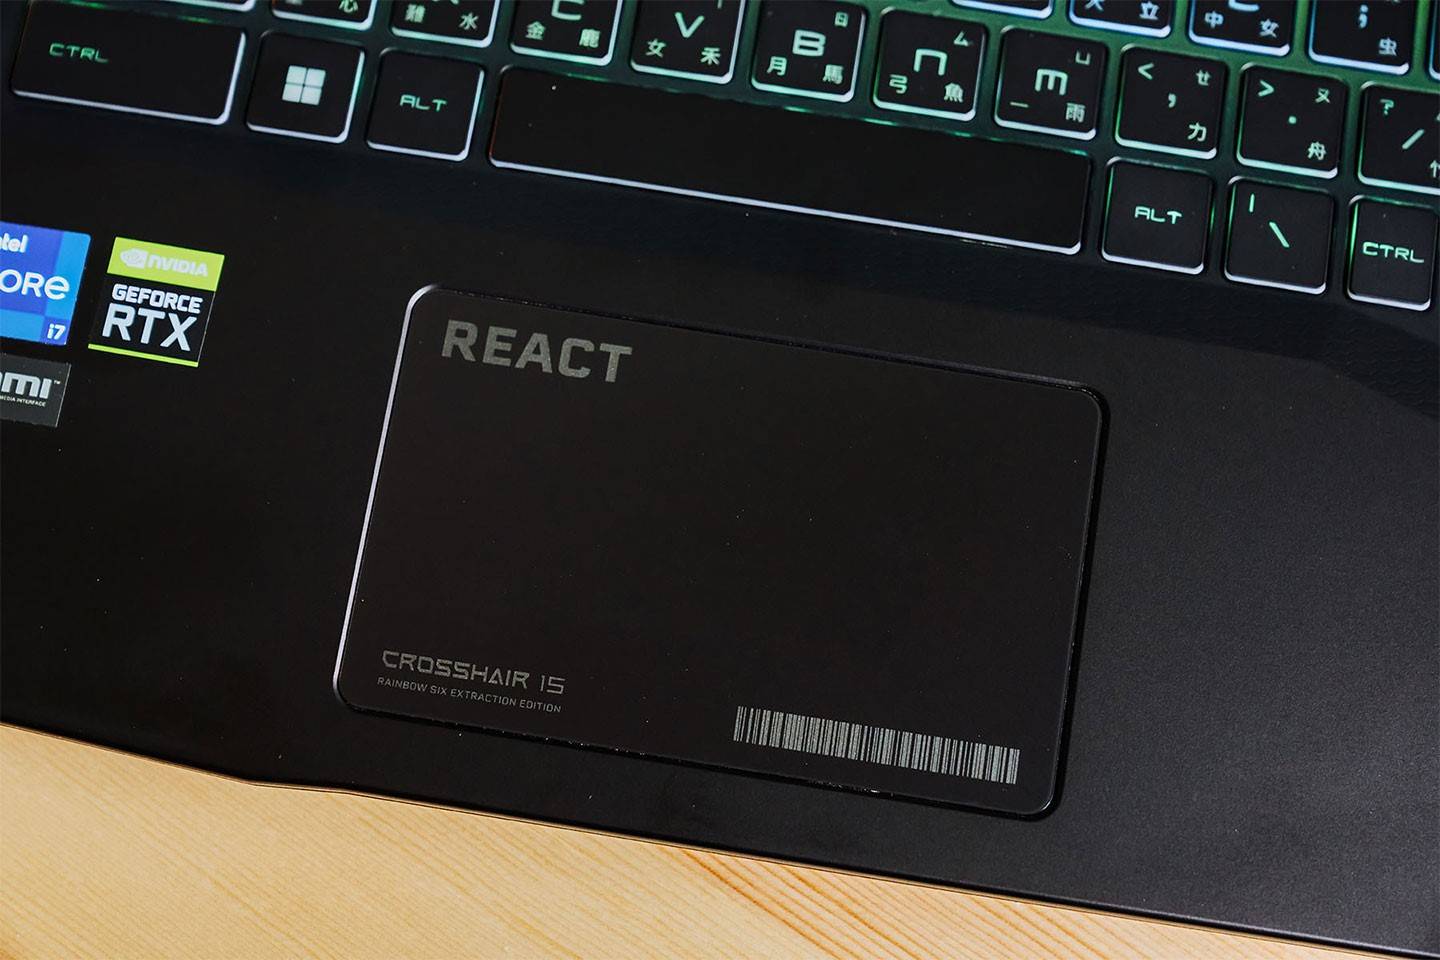 无键式的触控板在边角压印了 REACT 与 Crosshair 15 字样，搭配上二维条码整个很有游戏氛围。